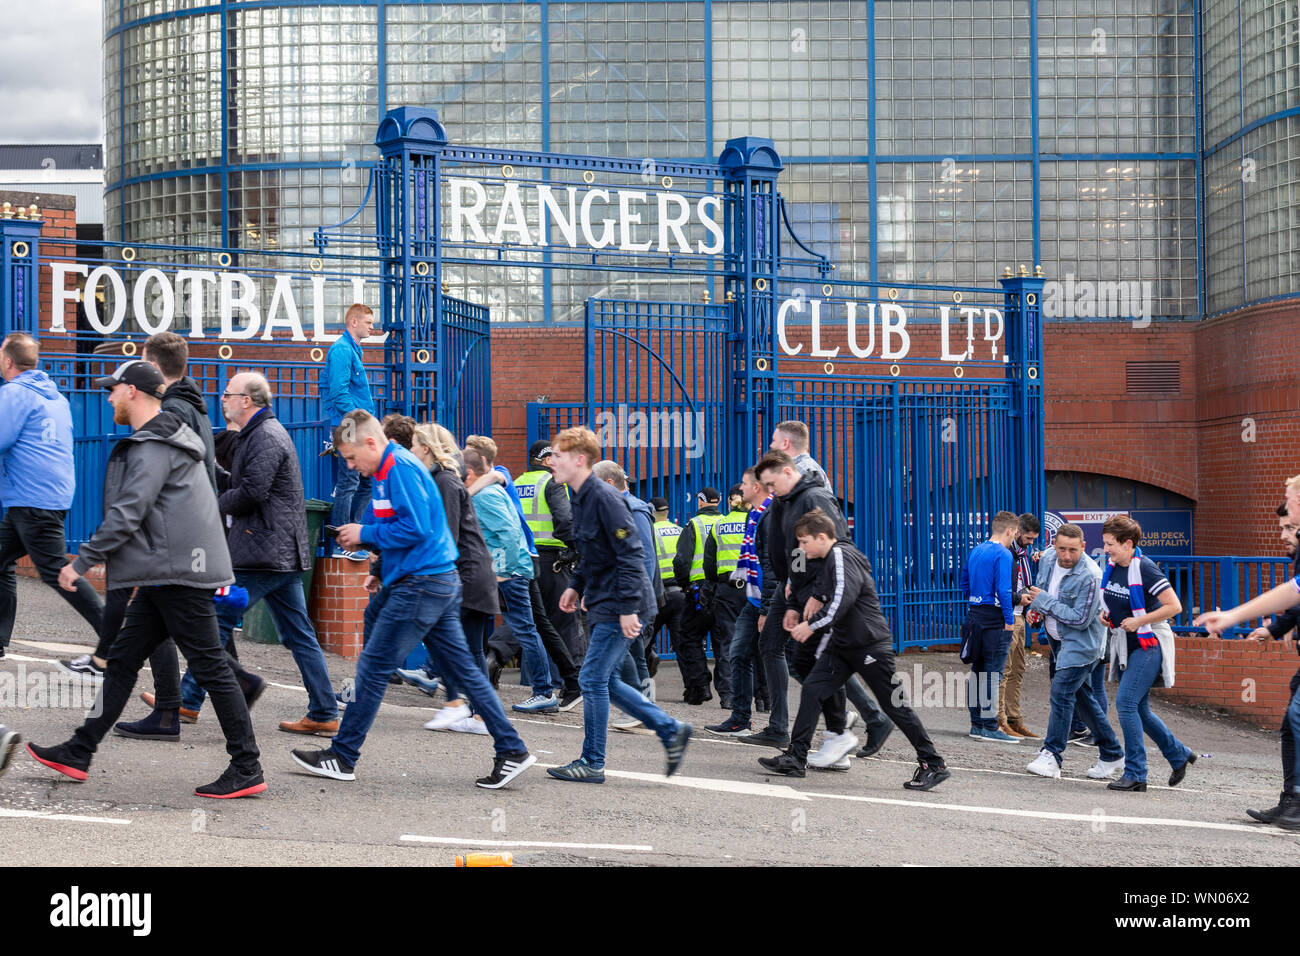 L'arrivée des fans de Rangers à Ibrox Stade de football pour un vieux jeu ferme avec Glasgow Celtic le dimanche 1er septembre 2019 Banque D'Images